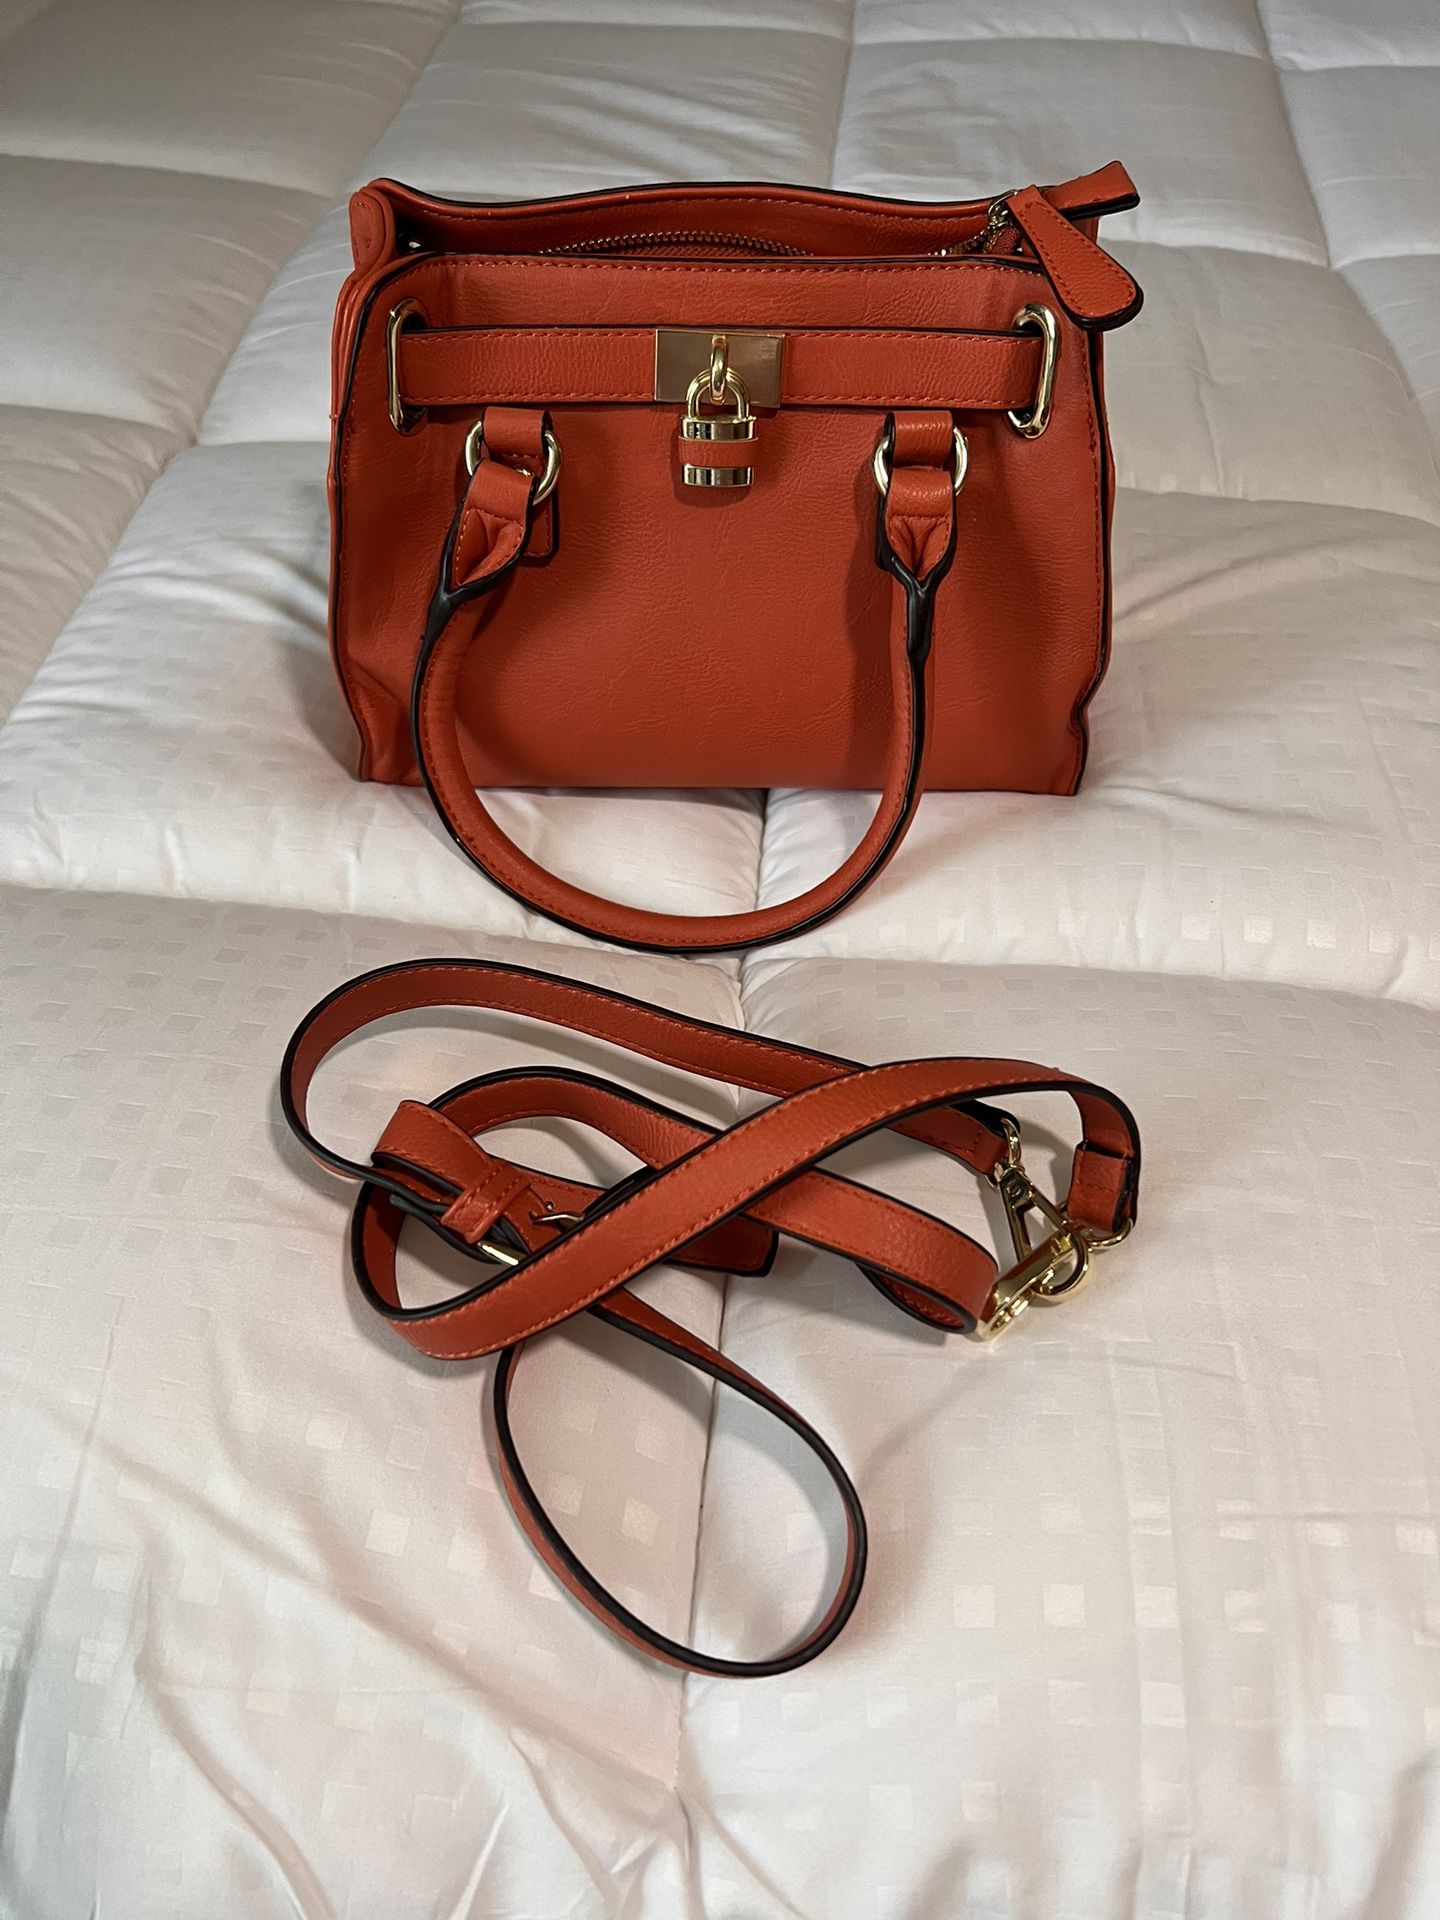 Charming Charlies Orange Handbag/Purse